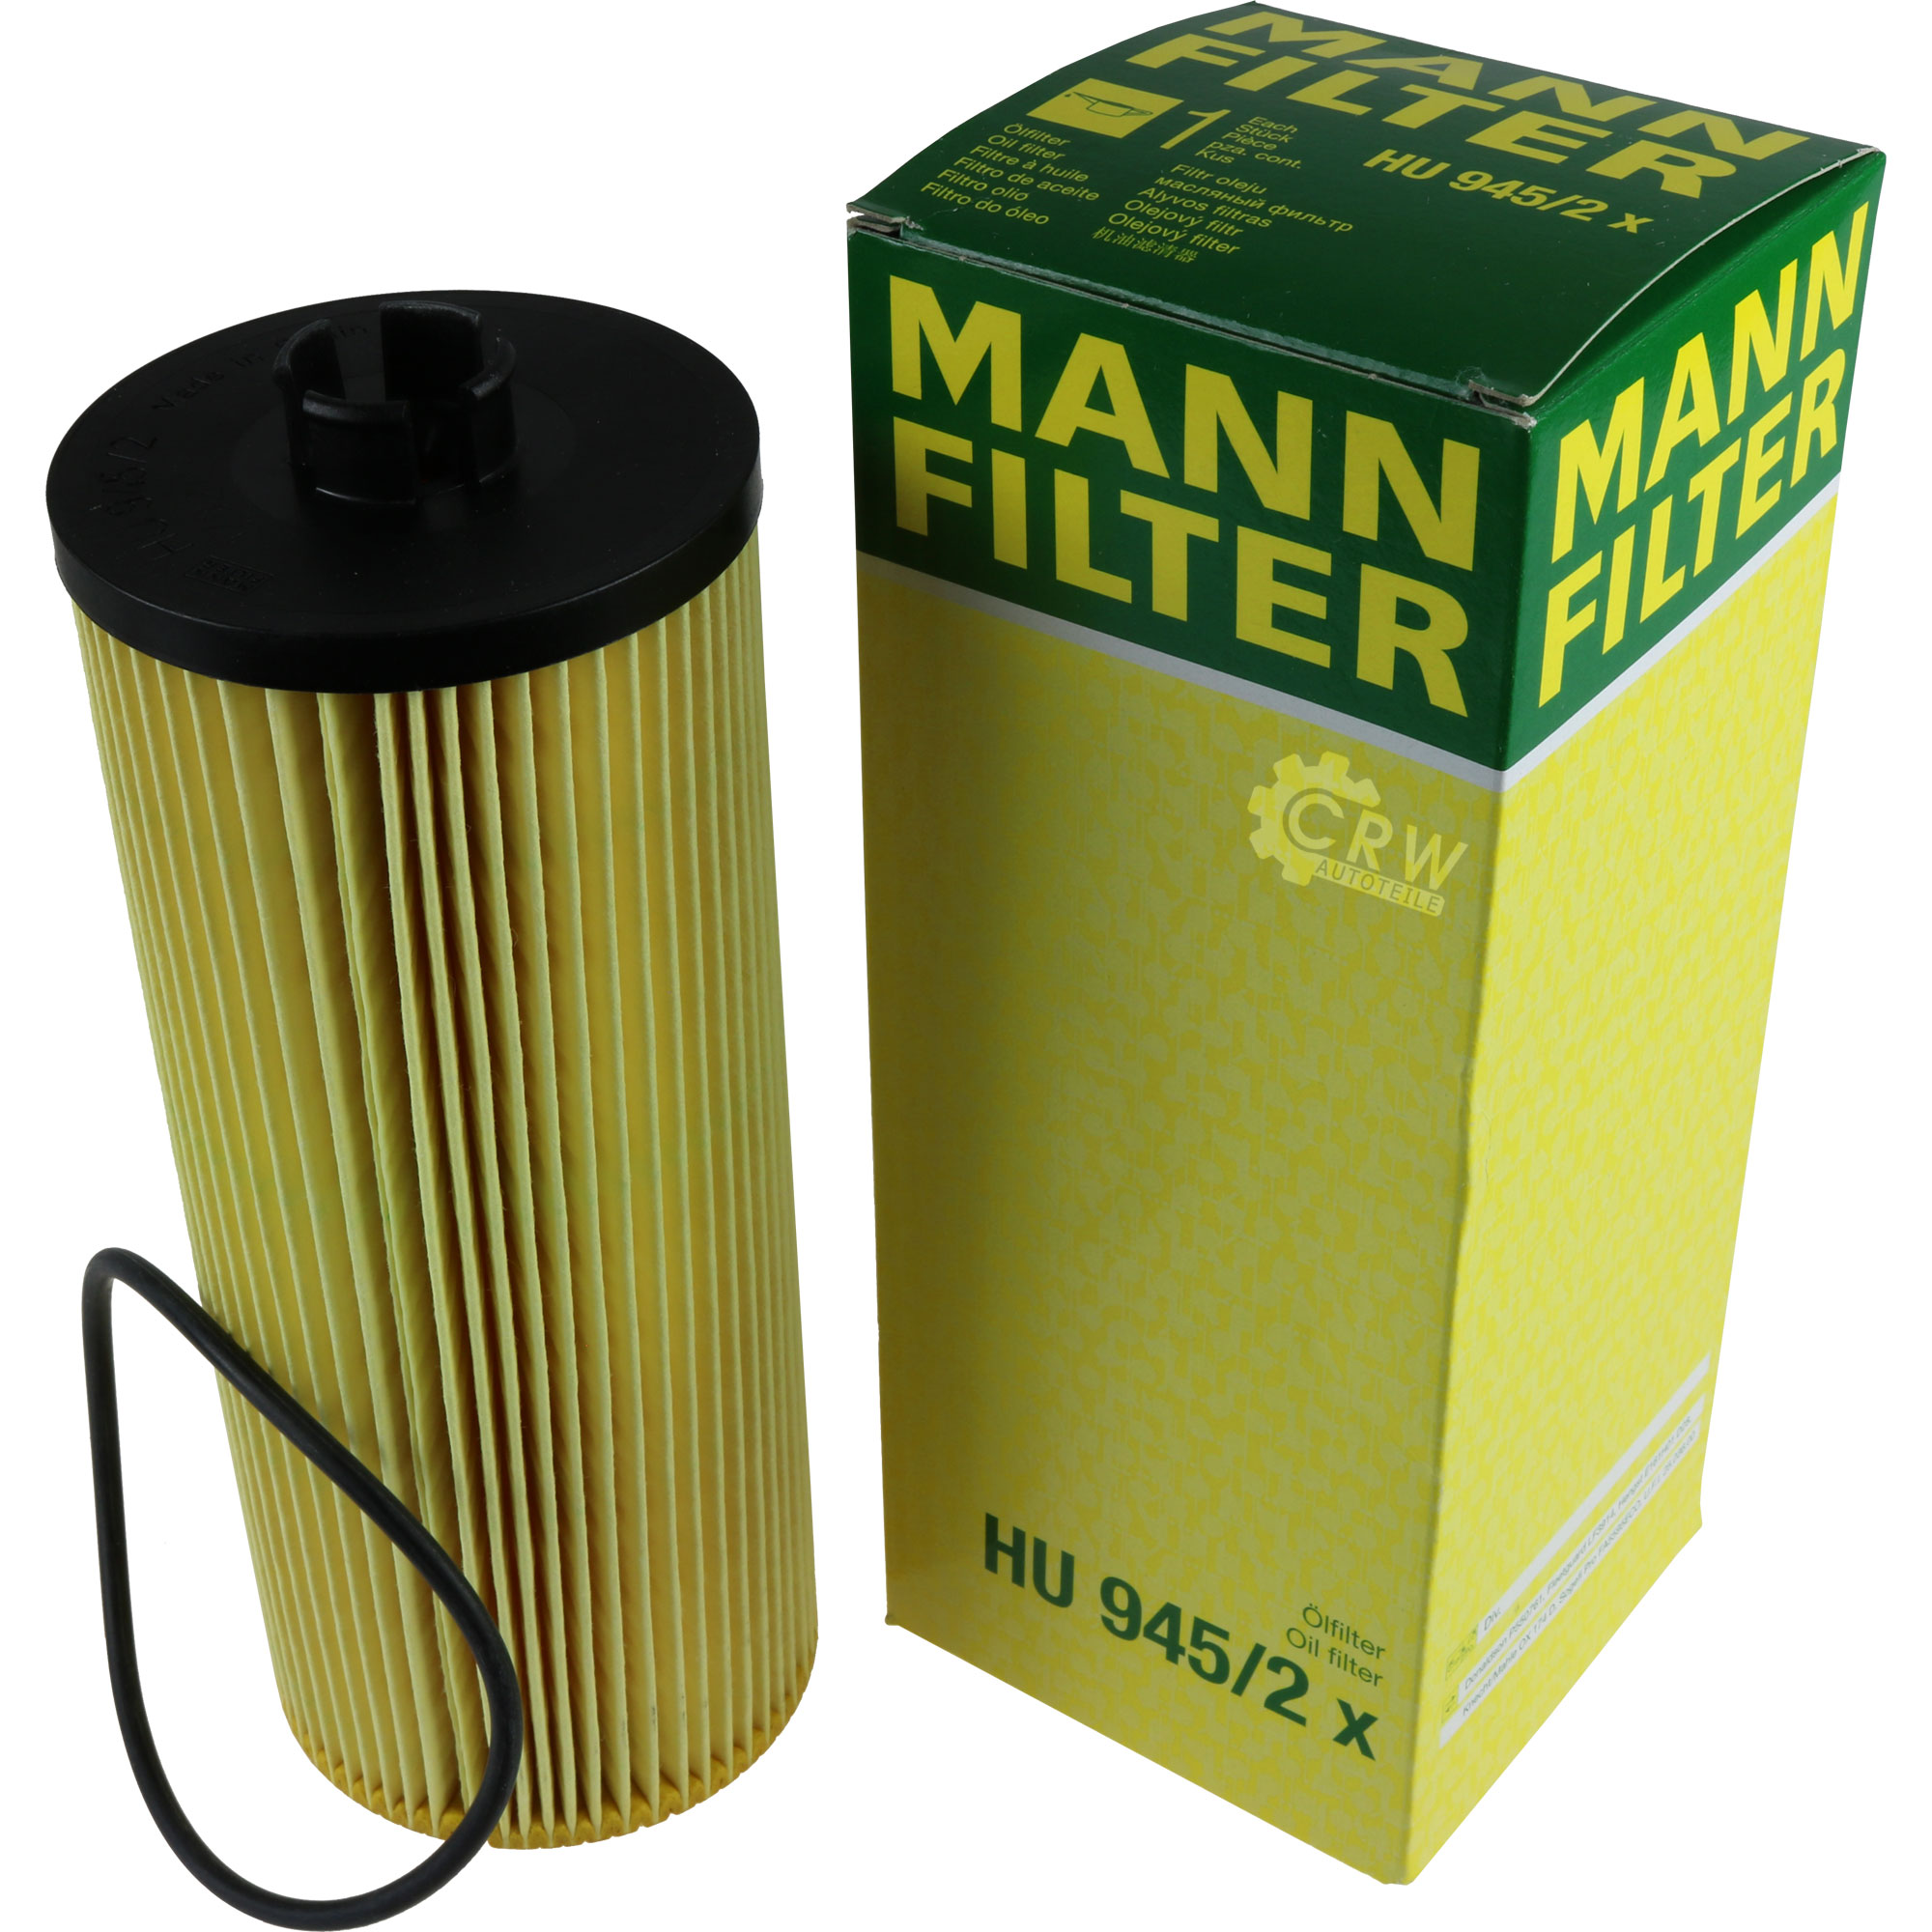 MANN-FILTER Ölfilter Oelfilter HU 945/2 x Oil Filter